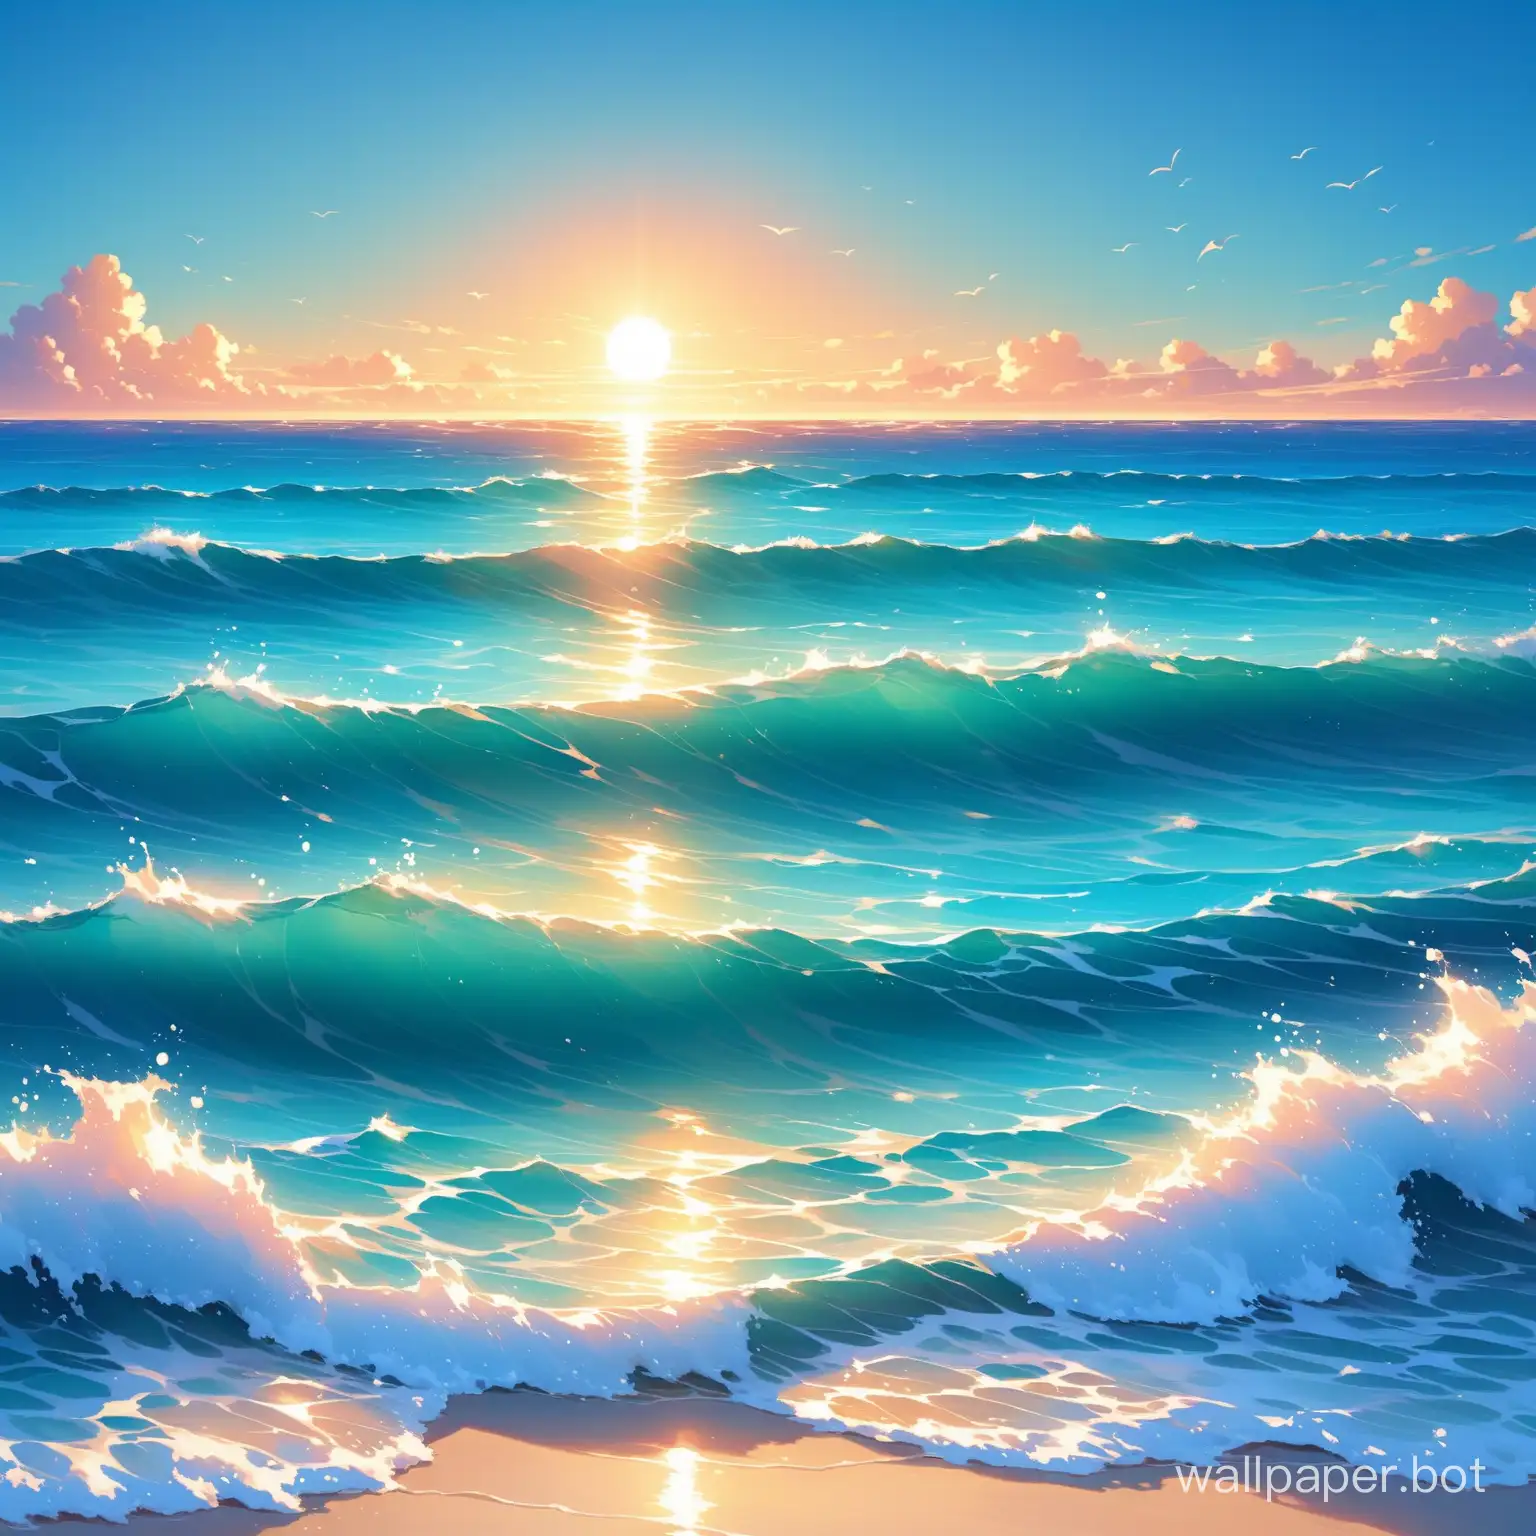 Tranquil-Sunset-Over-the-Vast-Ocean-Horizon